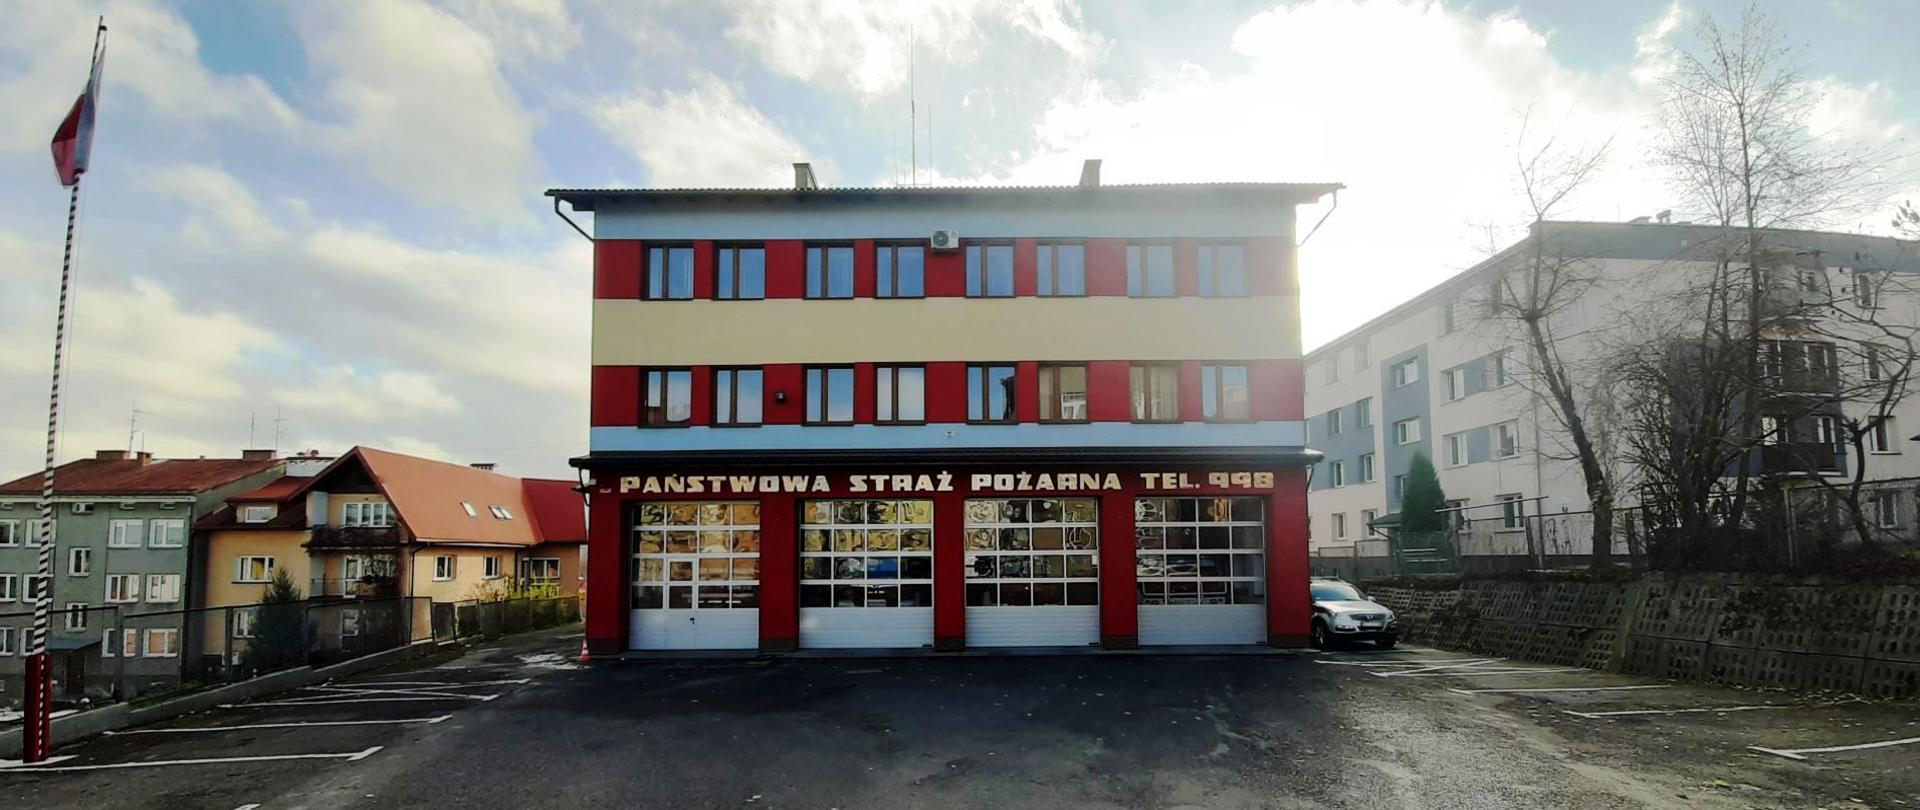 Fotografia kolorowa przedstawia widok trzykondygnacyjnego budynku Komendy Powiatowej Państwowej Straży Pożarnej w Brzozowie. Na pierwszym planie asfaltowy plac manewrowy przed budynkiem. Po lewej stronie na maszcie flagowym powiewa biało-czerwona flaga. Na środku drugi plan wypełnia ściana frontowa budynku Komendy Powiatowej Państwowej Straży Pożarnej w Brzozowie, malowana pasami koloru czerwonego, niebieskiego i żółtego, w okresie jesiennym. Na ścianie parteru napis o treści Państwowa Straż Pożarna Tel. 998. Na parterze widoczne cztery srebrne bramy garażowe, na pozostałych dwóch piętrach dwa rzędy okien.